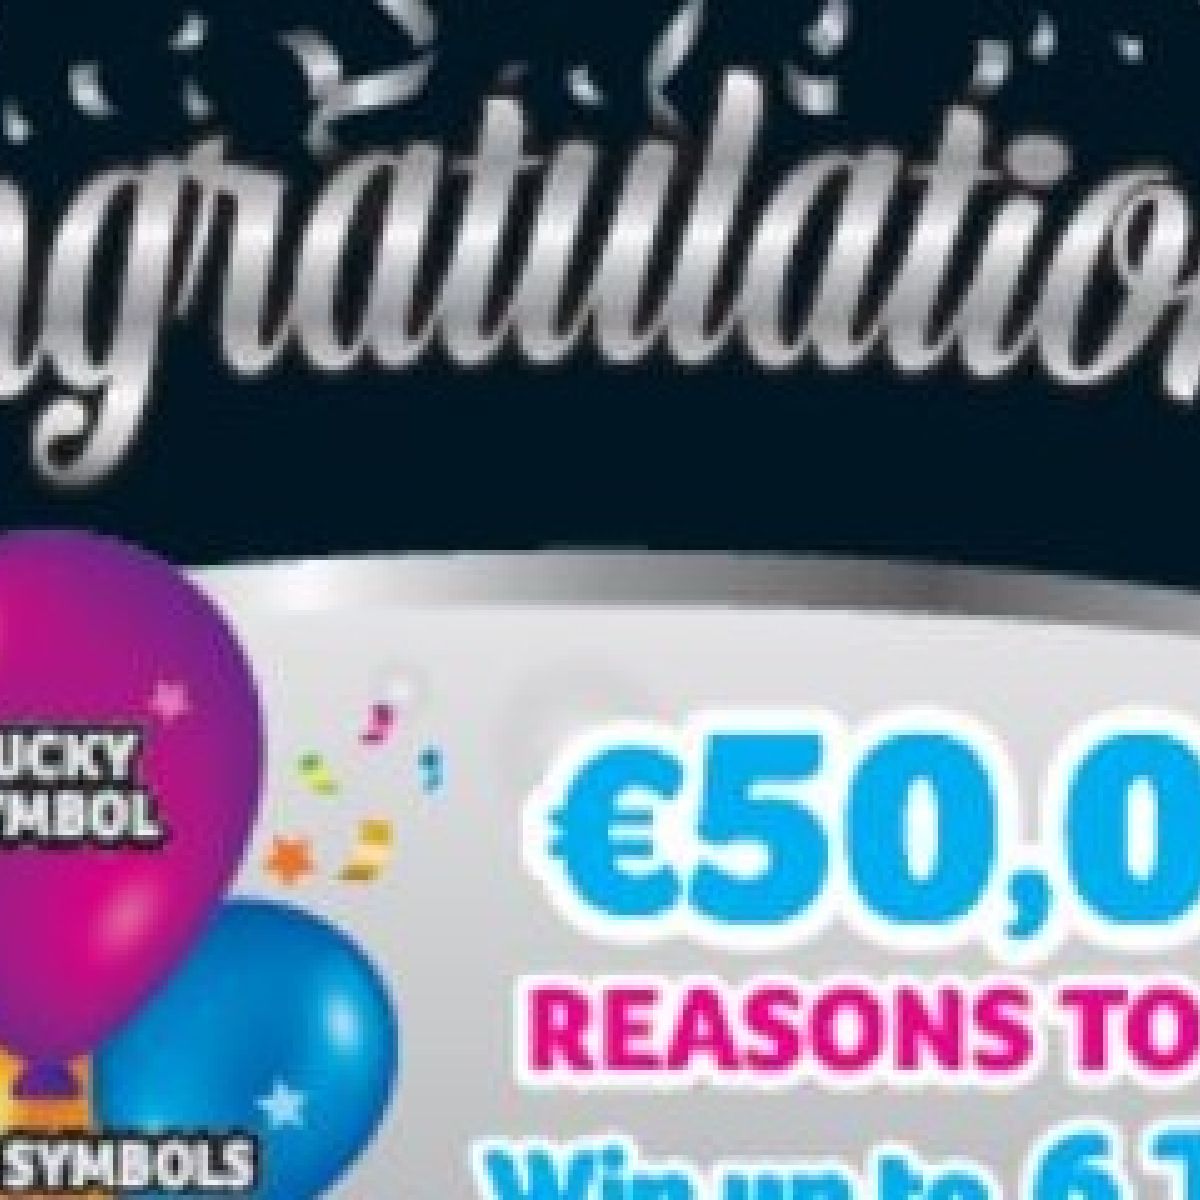 irish lotto results 18th may 2019